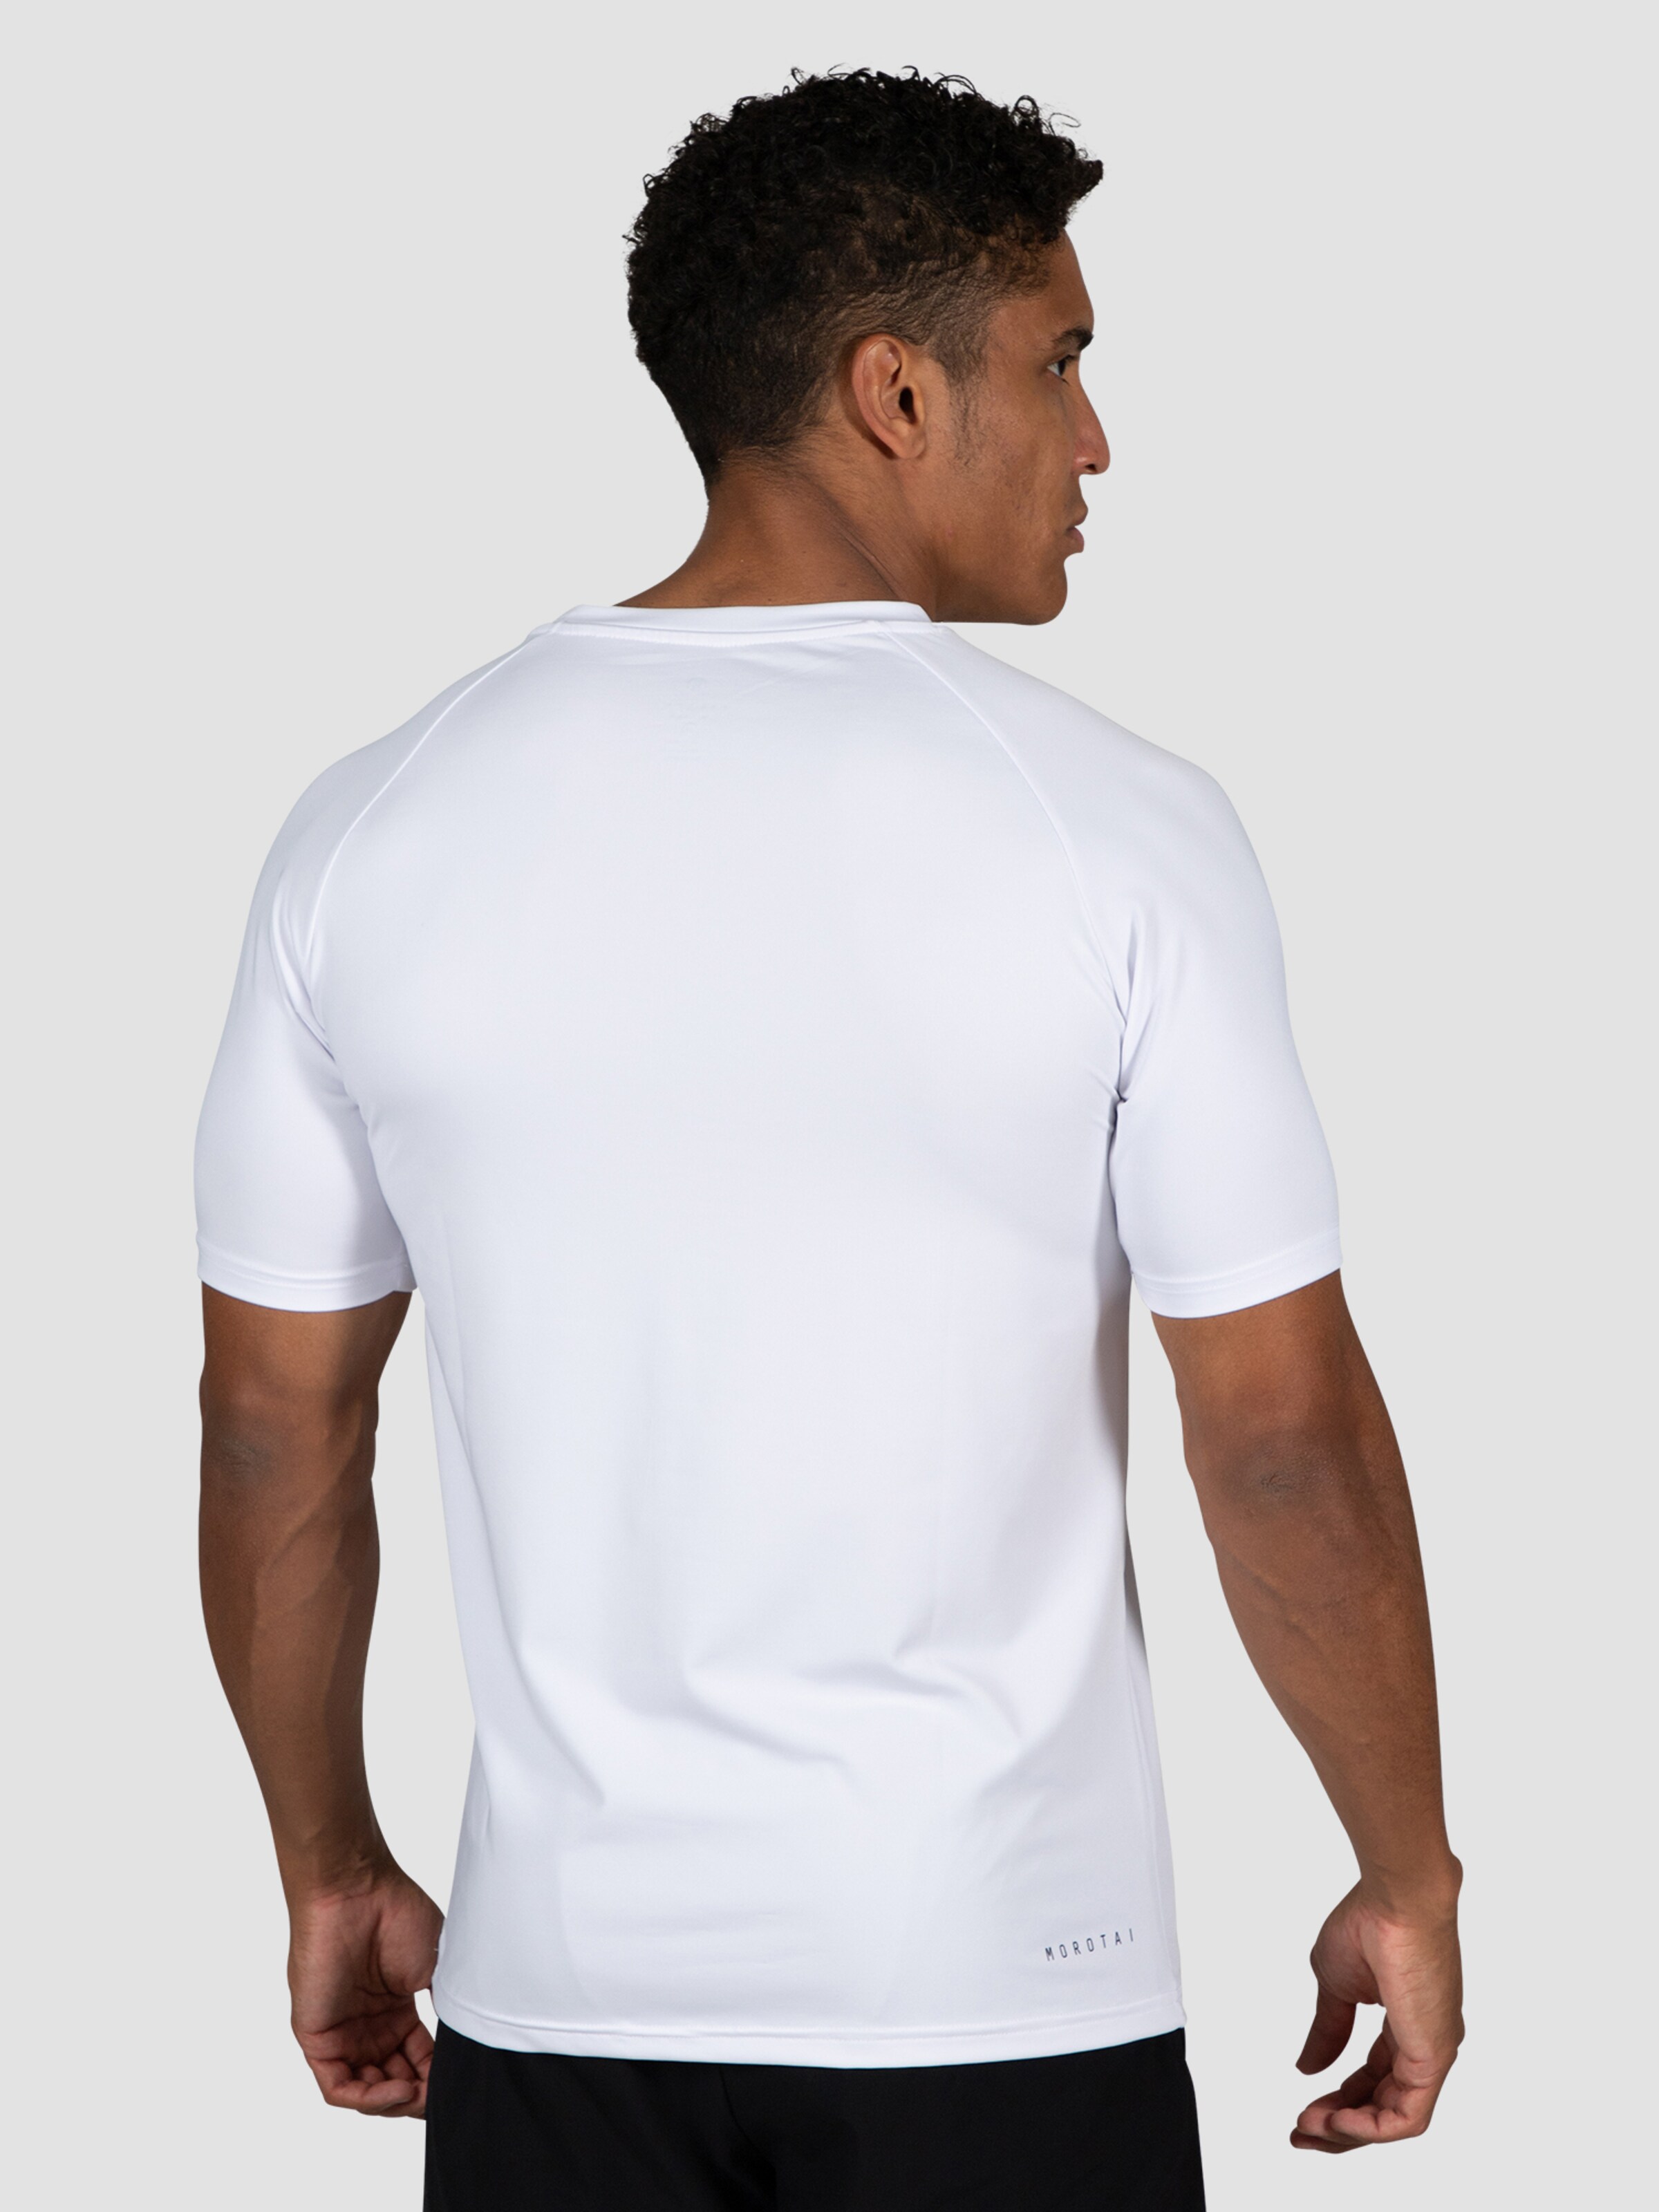 Sport T-Shirt fonctionnel MOROTAI en Blanc 